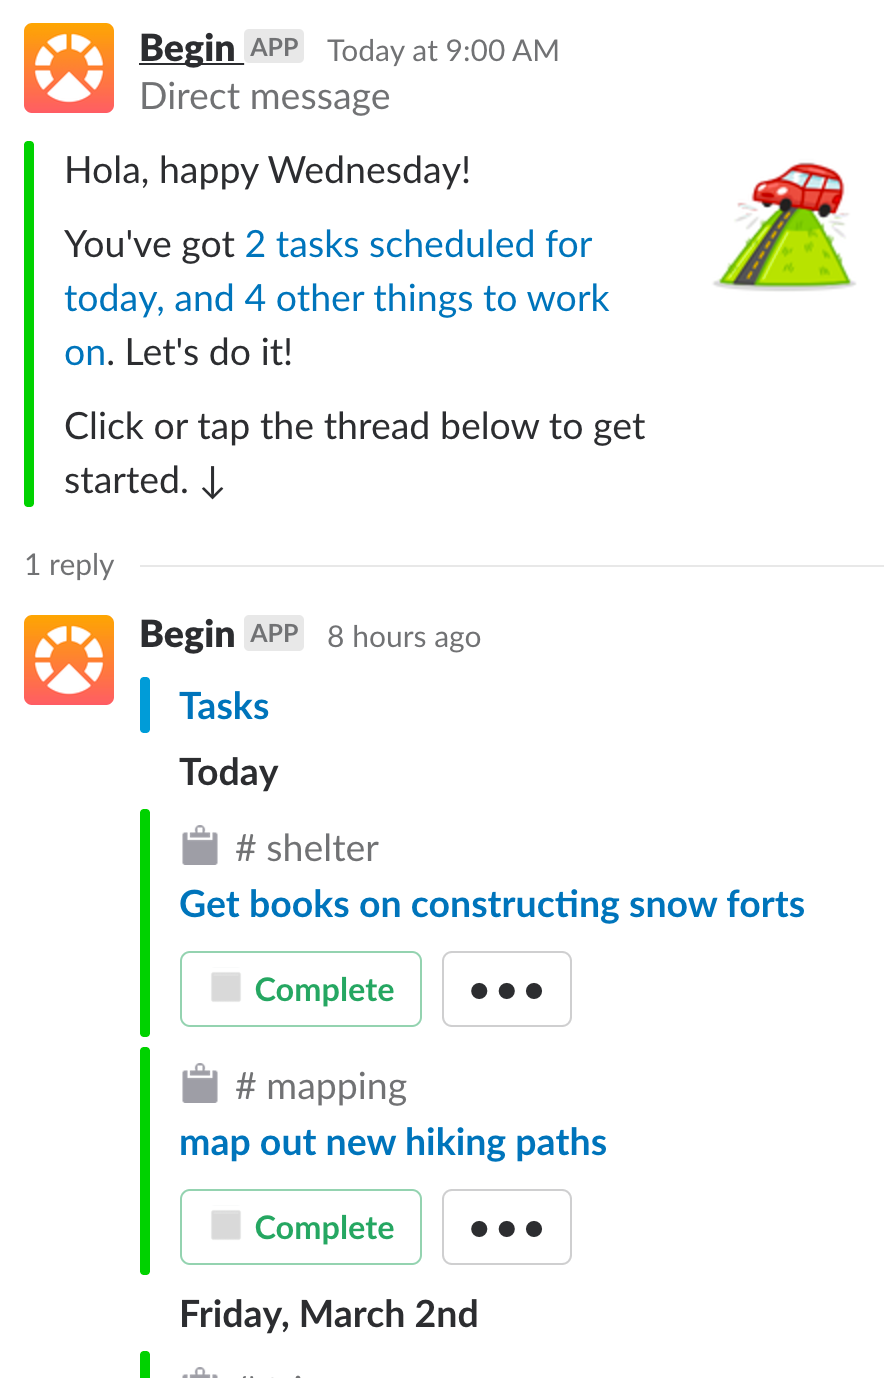 Das tägliche Update in Slack (Screenshot: Begin/Small Wins)